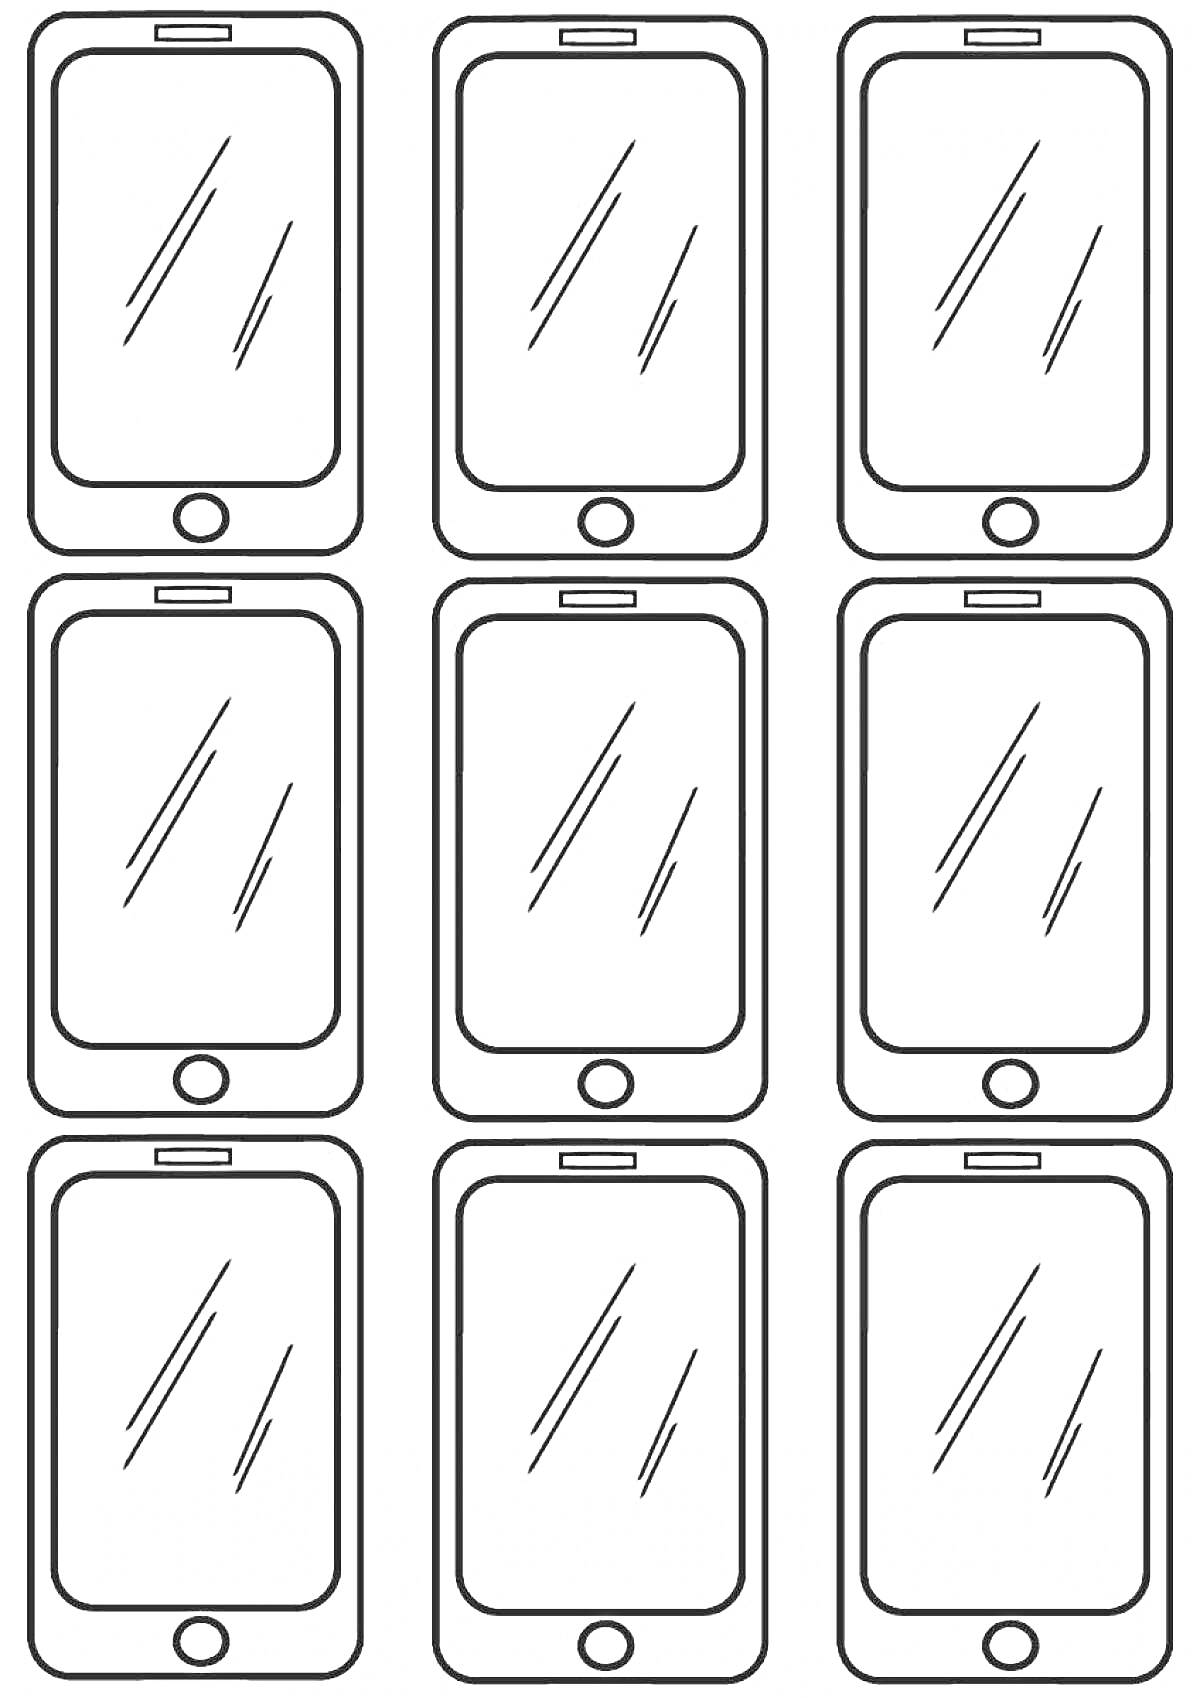 Шаблон для раскрашивания с изображением девяти смартфонов с круглыми кнопками и динамиками